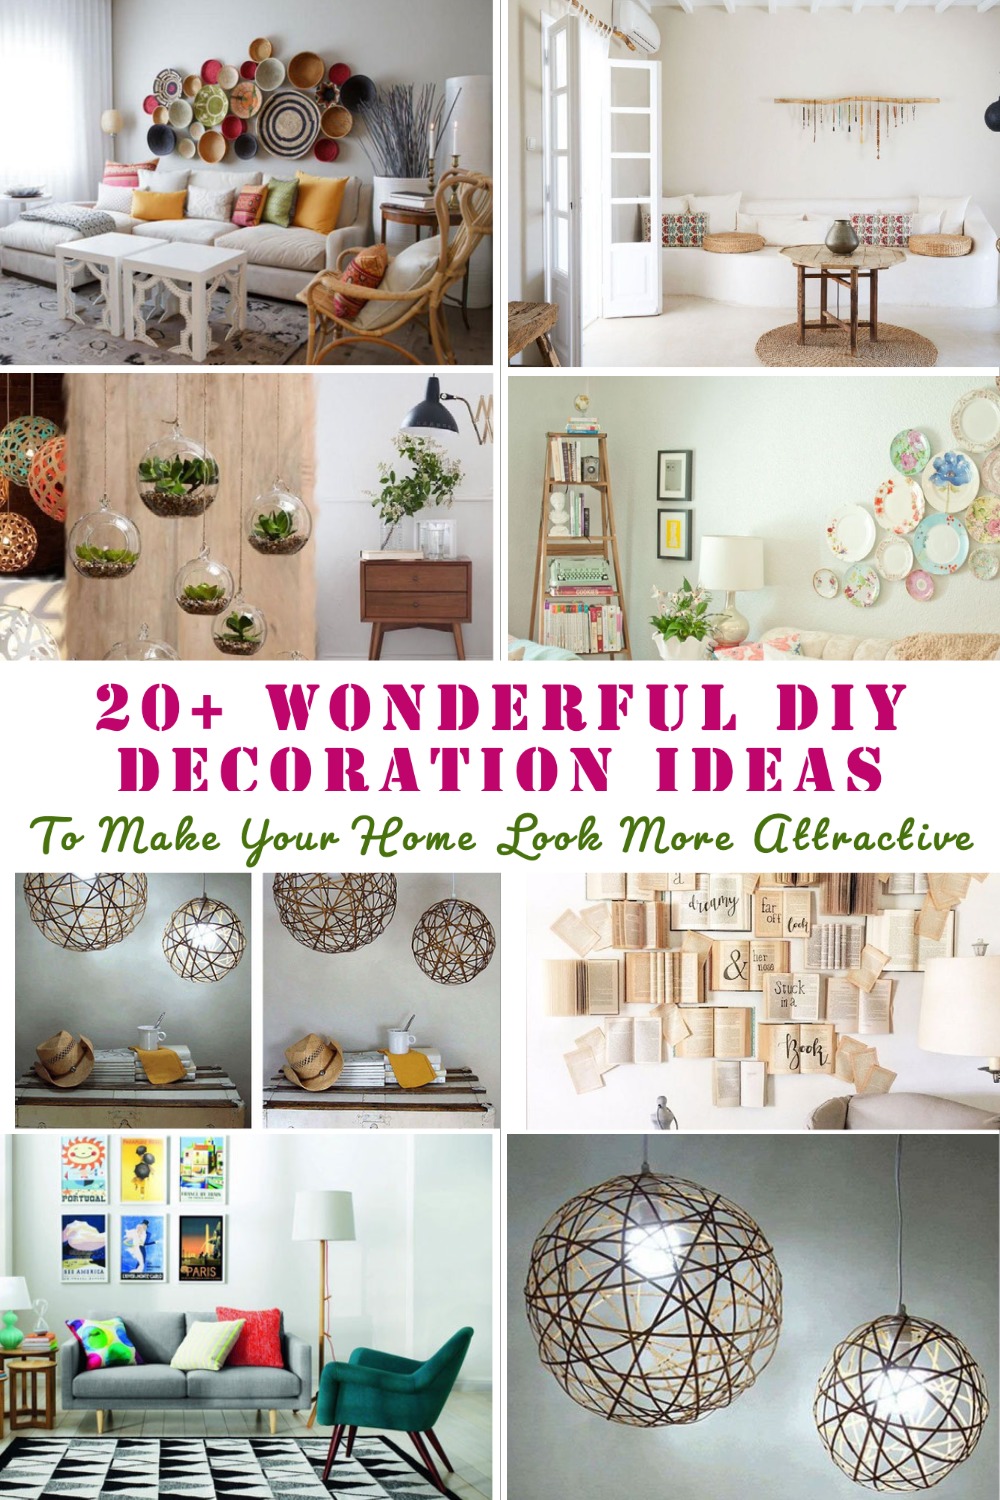 Wonderful DIY Decoration Ideas